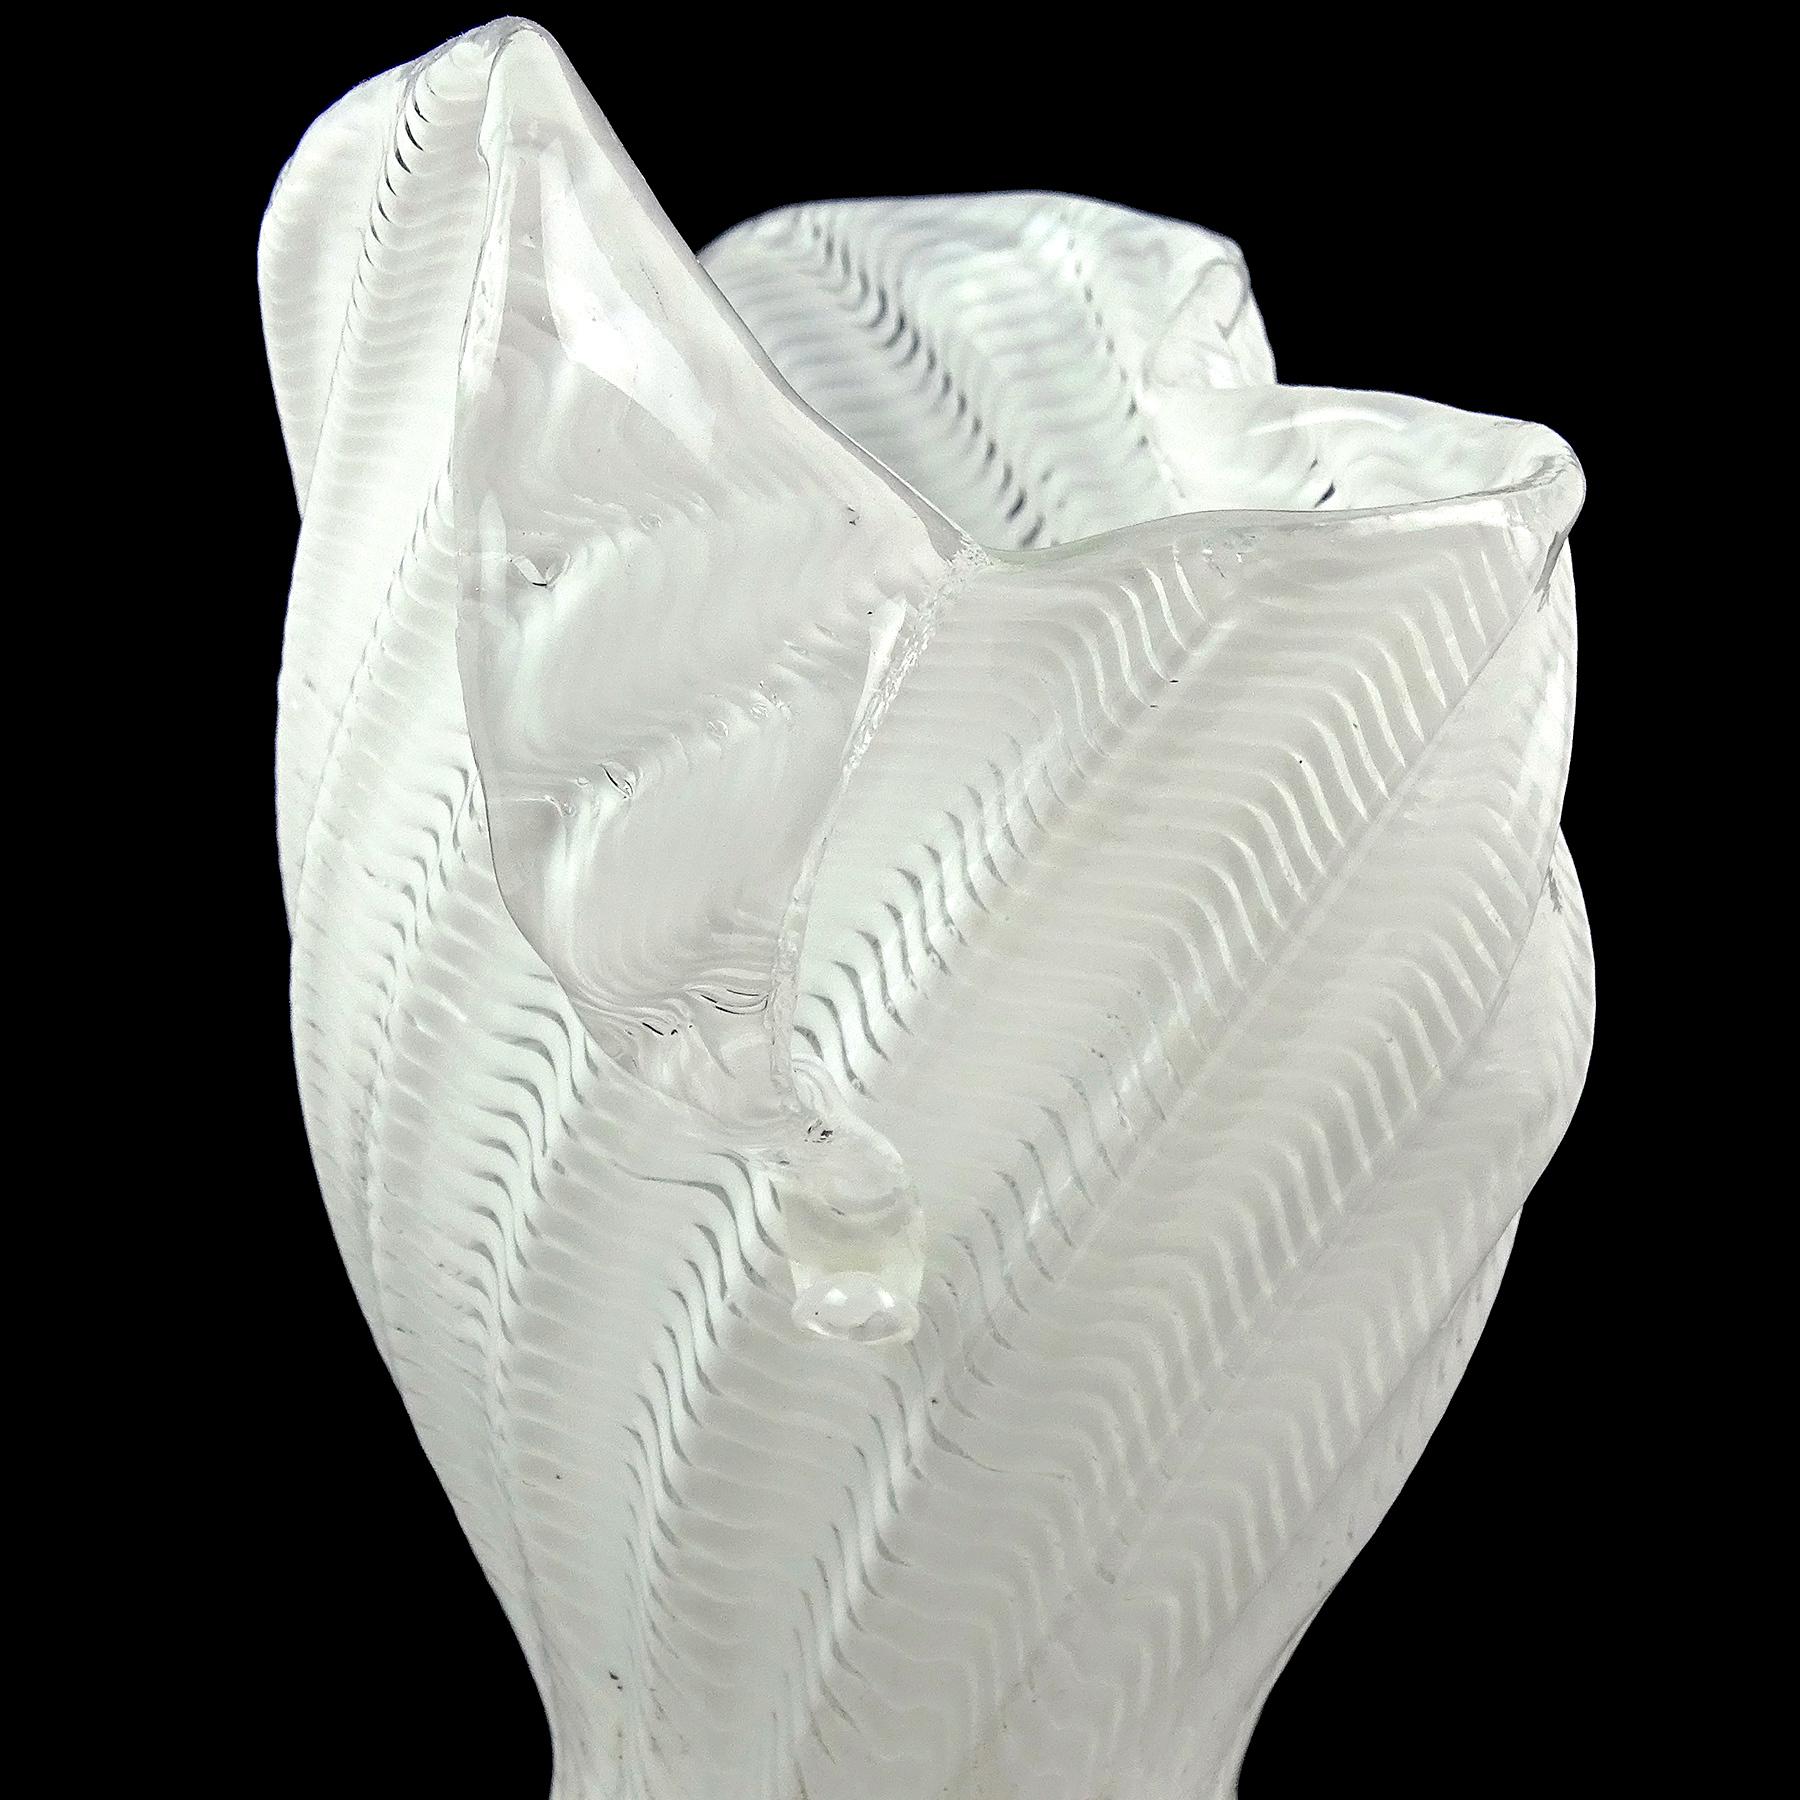 Dino Martens Murano White Ribbon Woman Body Dress Italian Art Glass Flower Vase For Sale 2